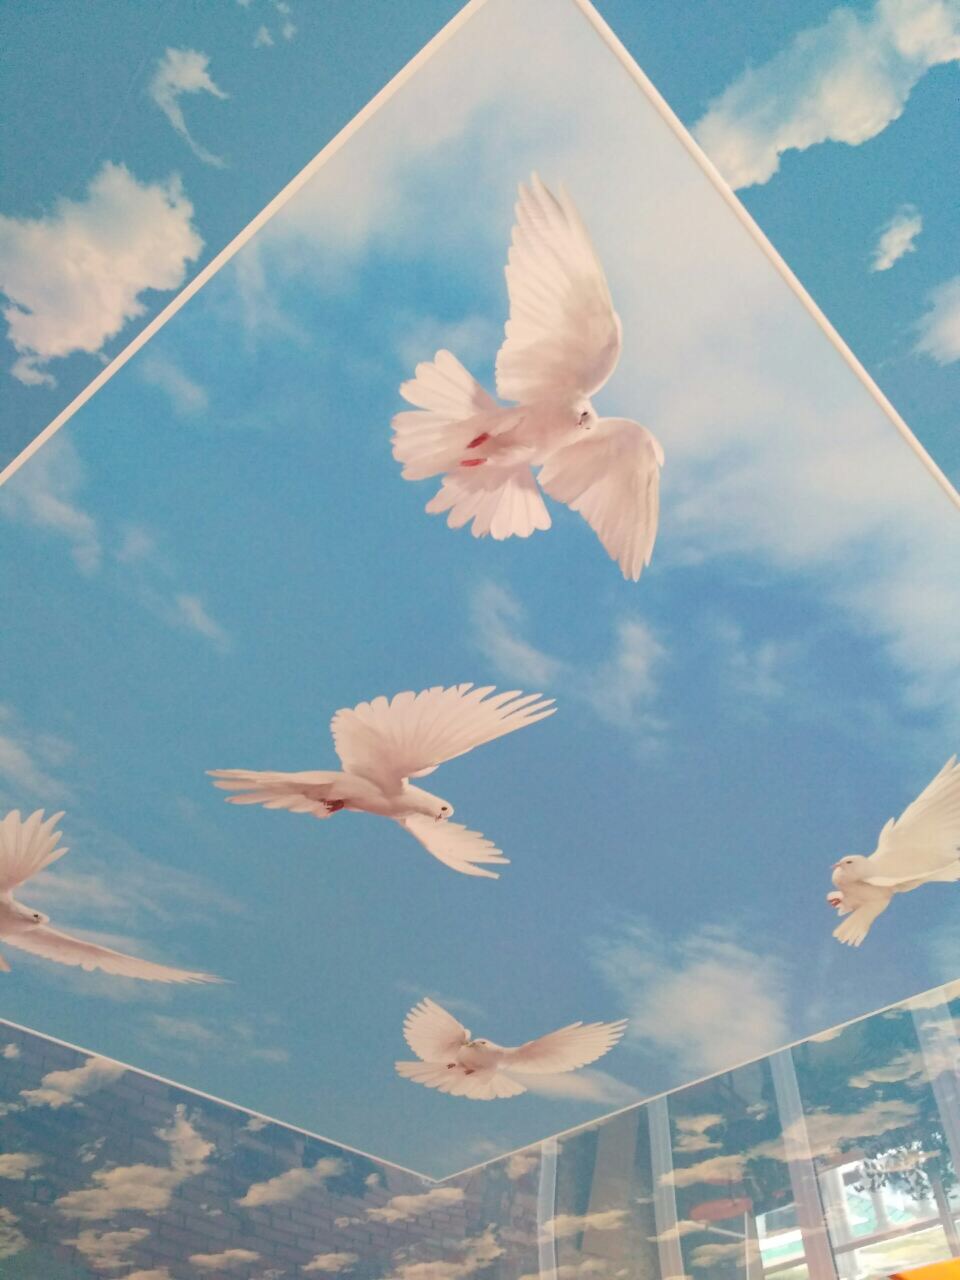 Натяжной потолок с картинкой голубей в небе с облаками.